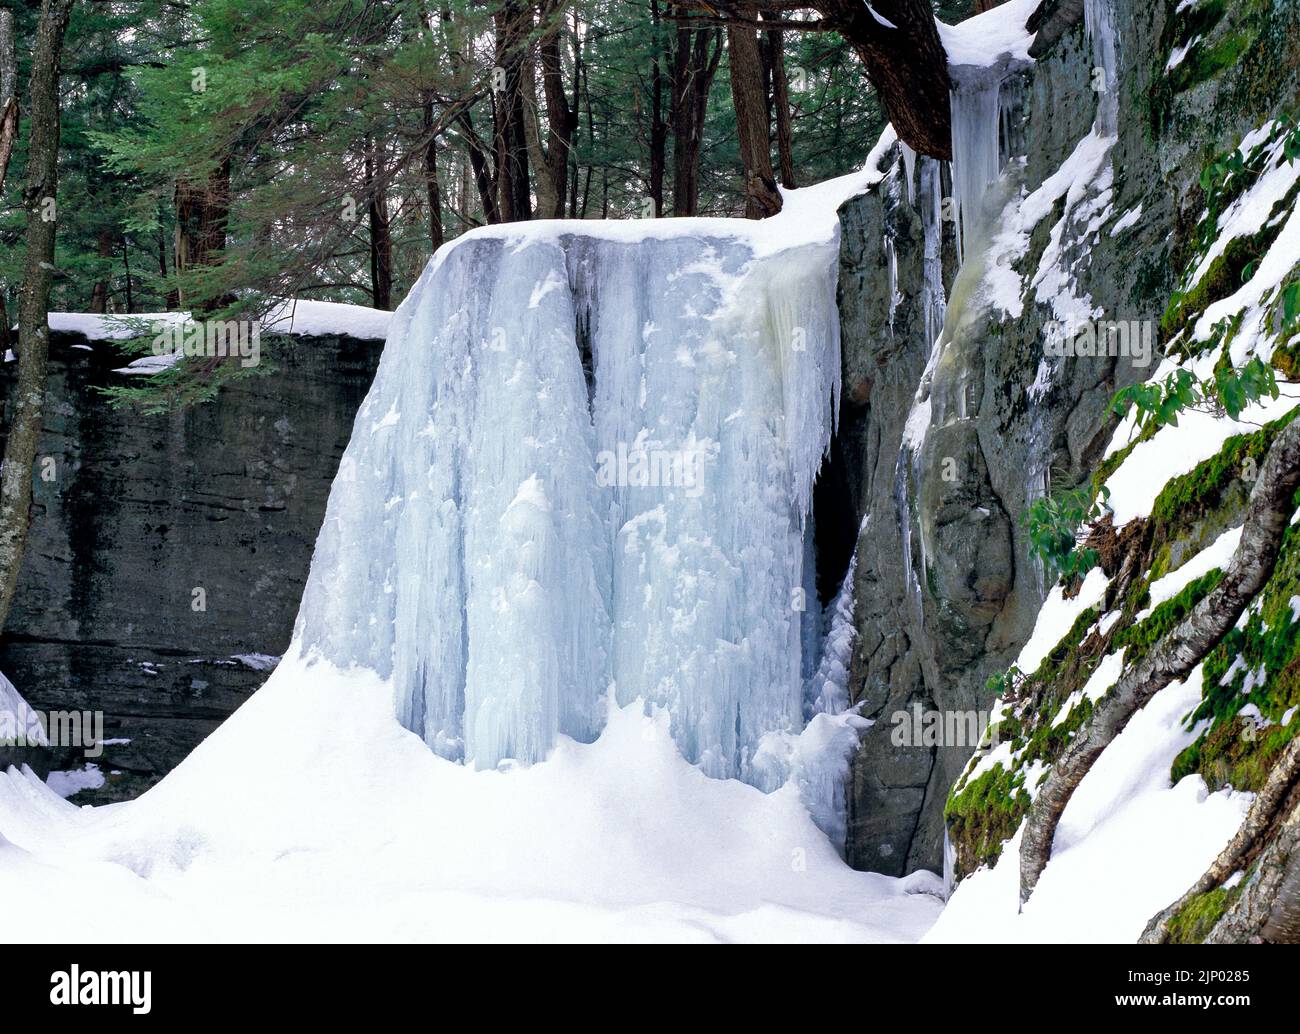 Hector Falls, d'une hauteur de 22 mètres, s'écoule au-dessus d'énormes rochers de grès dans la forêt nationale d'Allegheny, en Pennsylvanie. Banque D'Images